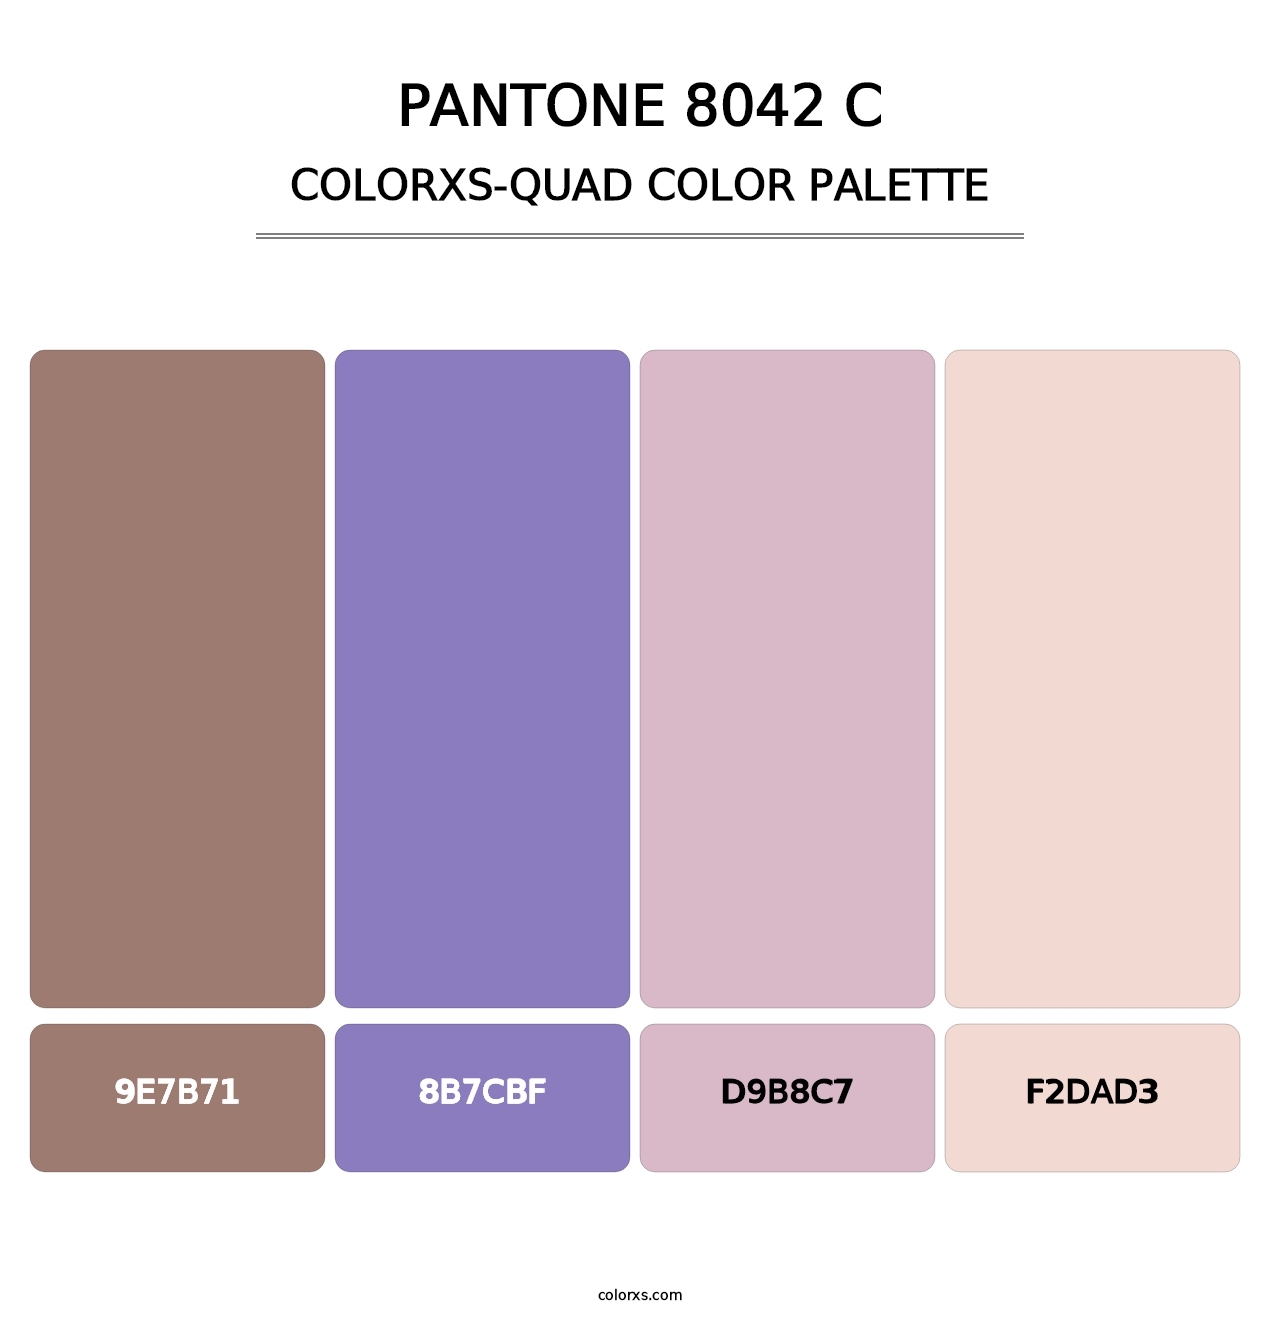 PANTONE 8042 C - Colorxs Quad Palette